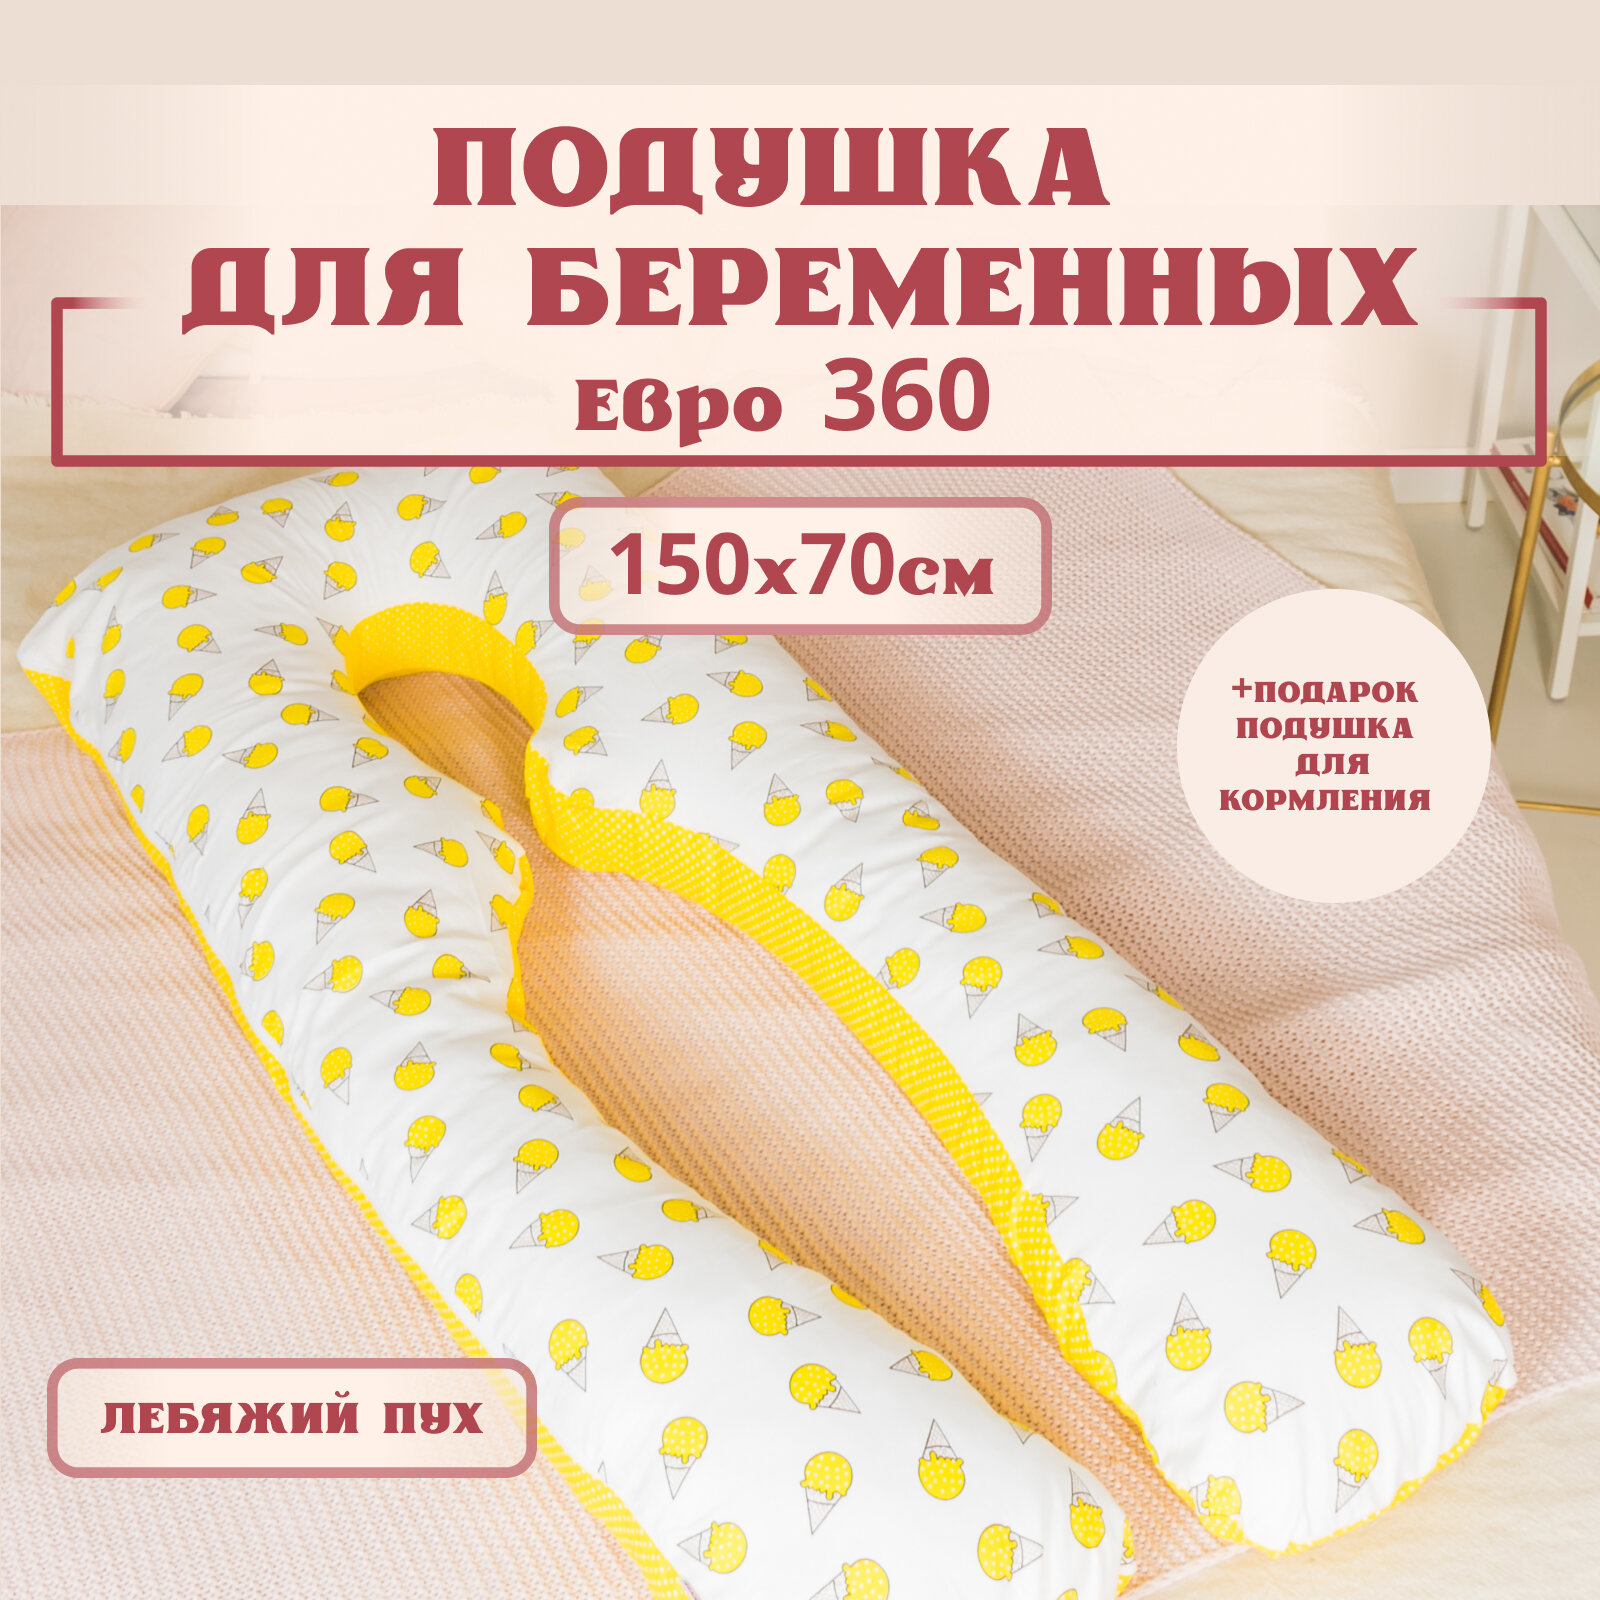 Подушка для беременных для сна и кормления анатомическая, Евро 360 150х70см, горох/мороженки, с лебяжим пухом + Подарок подушка для кормления